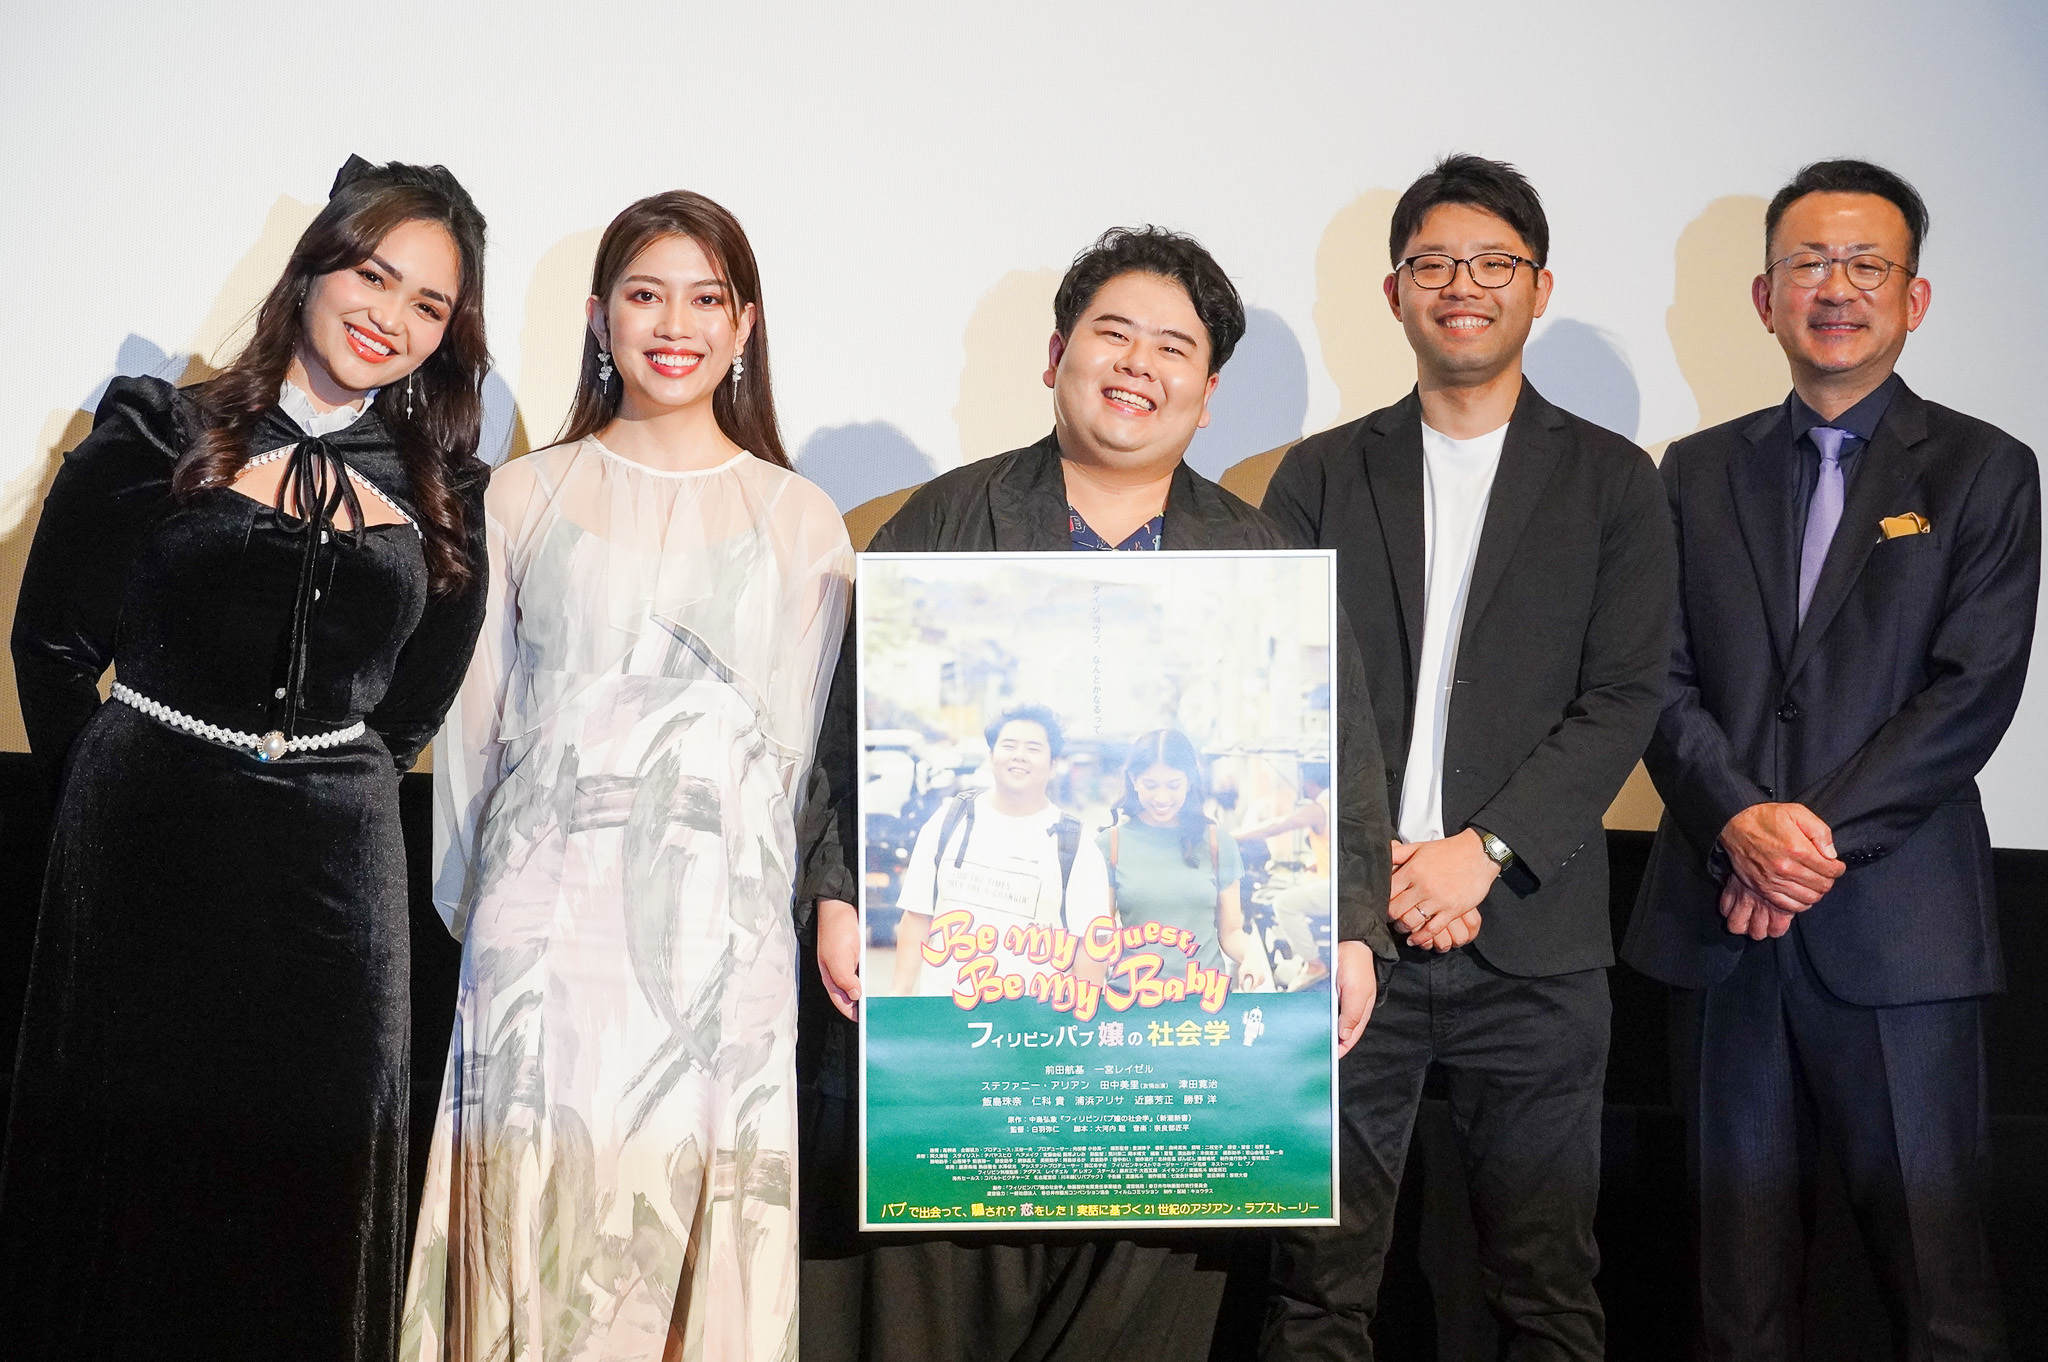 まえだまえだ前田航基、ルポ『フィリピンパブ嬢の社会学』映画化に「フィリピンは本当に素敵な国」(TOKYO HEADLINE WEB)